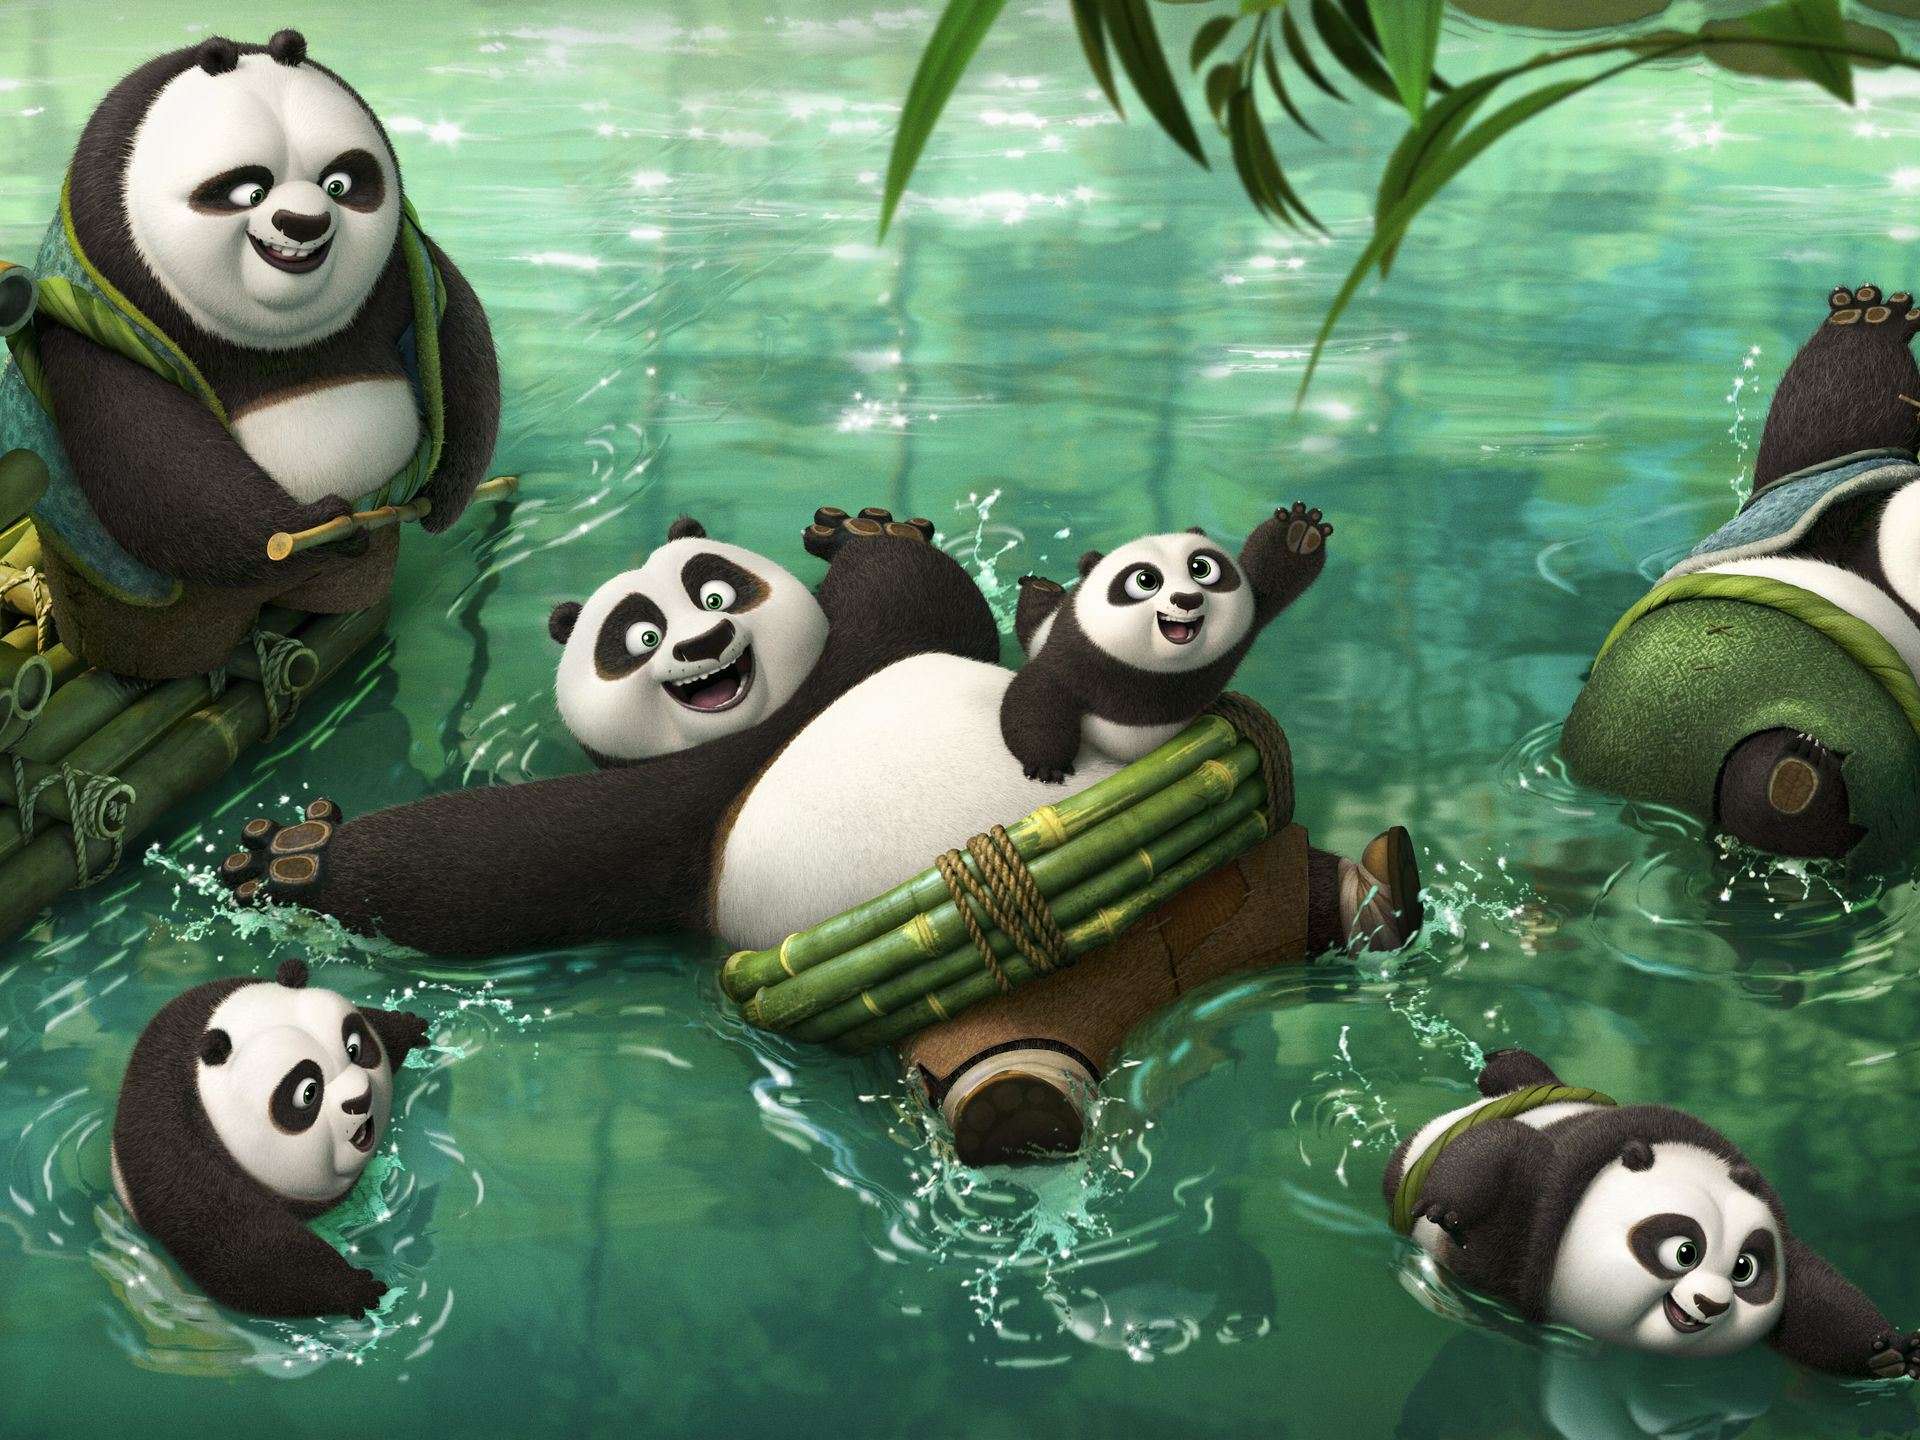 Trailer Kungfu Panda 3 sẽ đưa bạn vào một cuộc phiêu lưu đầy kịch tính và vui nhộn cùng chú gấu trúc Po. Anh đã trở thành vị vua của các gấu trúc và sẽ phải đối đầu với một tên ác quỷ đáng sợ. Liệu anh có thể chiến thắng và cứu vãn thế giới ảo tuyệt đẹp này?